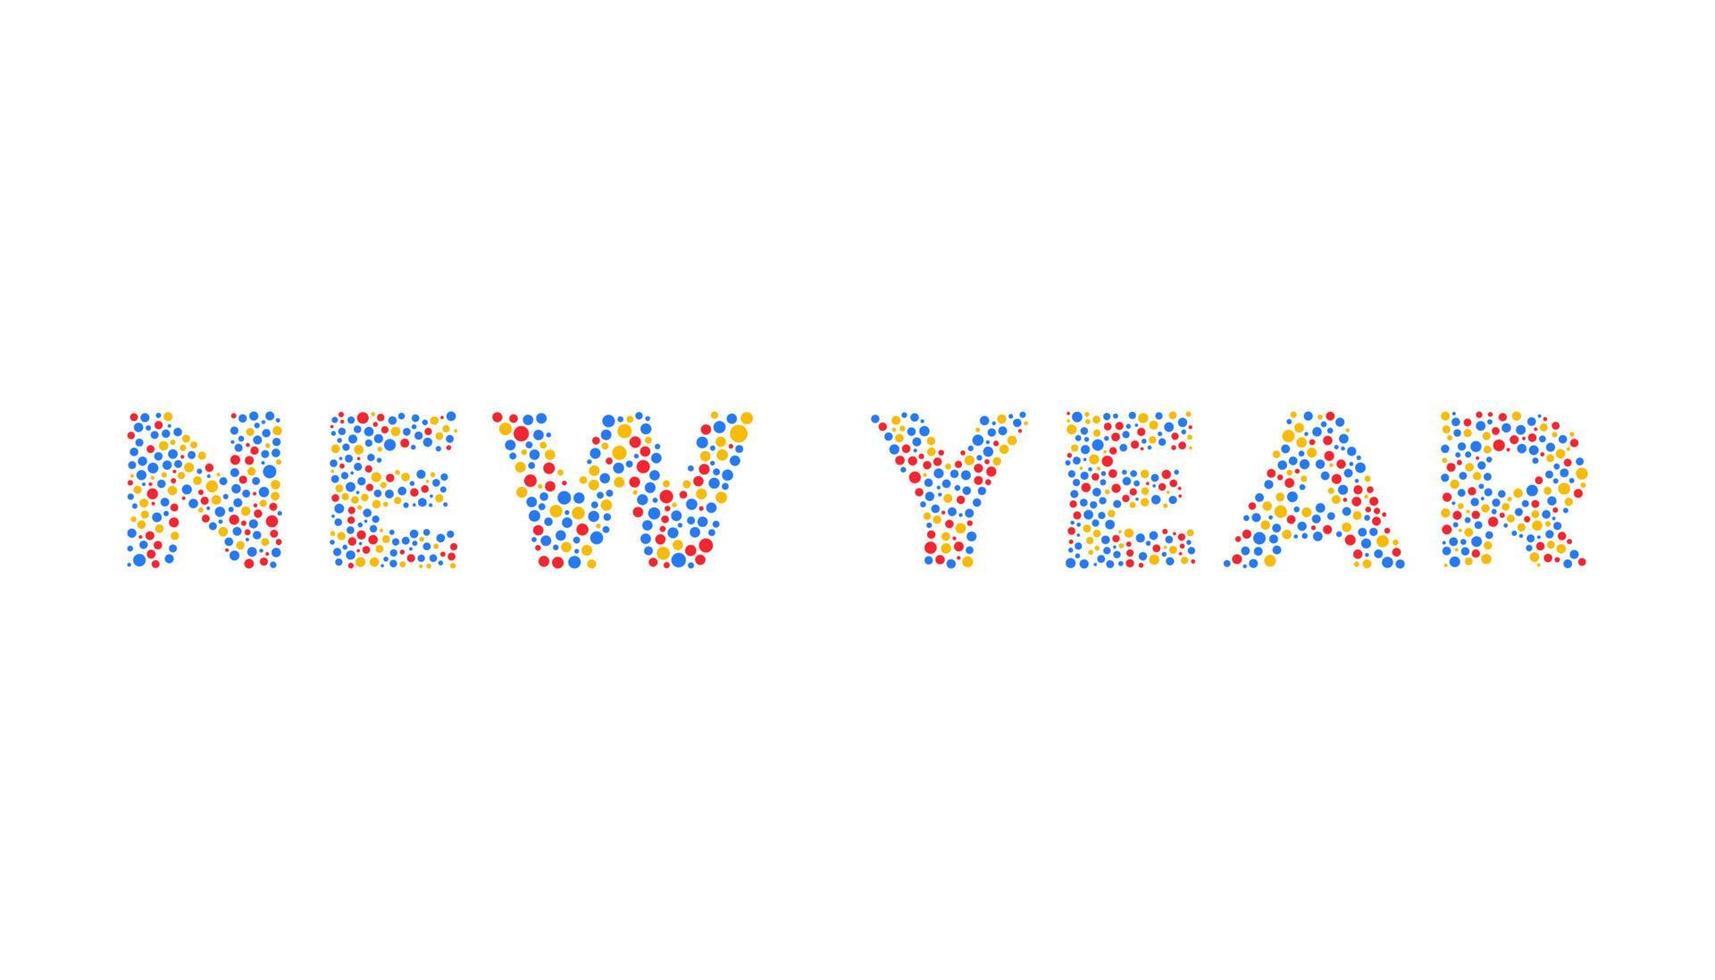 2022 gelukkig nieuwjaar tekst. ontwerpsjabloon viering typografie poster, spandoek of wenskaart voor prettige kerstdagen en gelukkig nieuwjaar. vector illustratie vintage